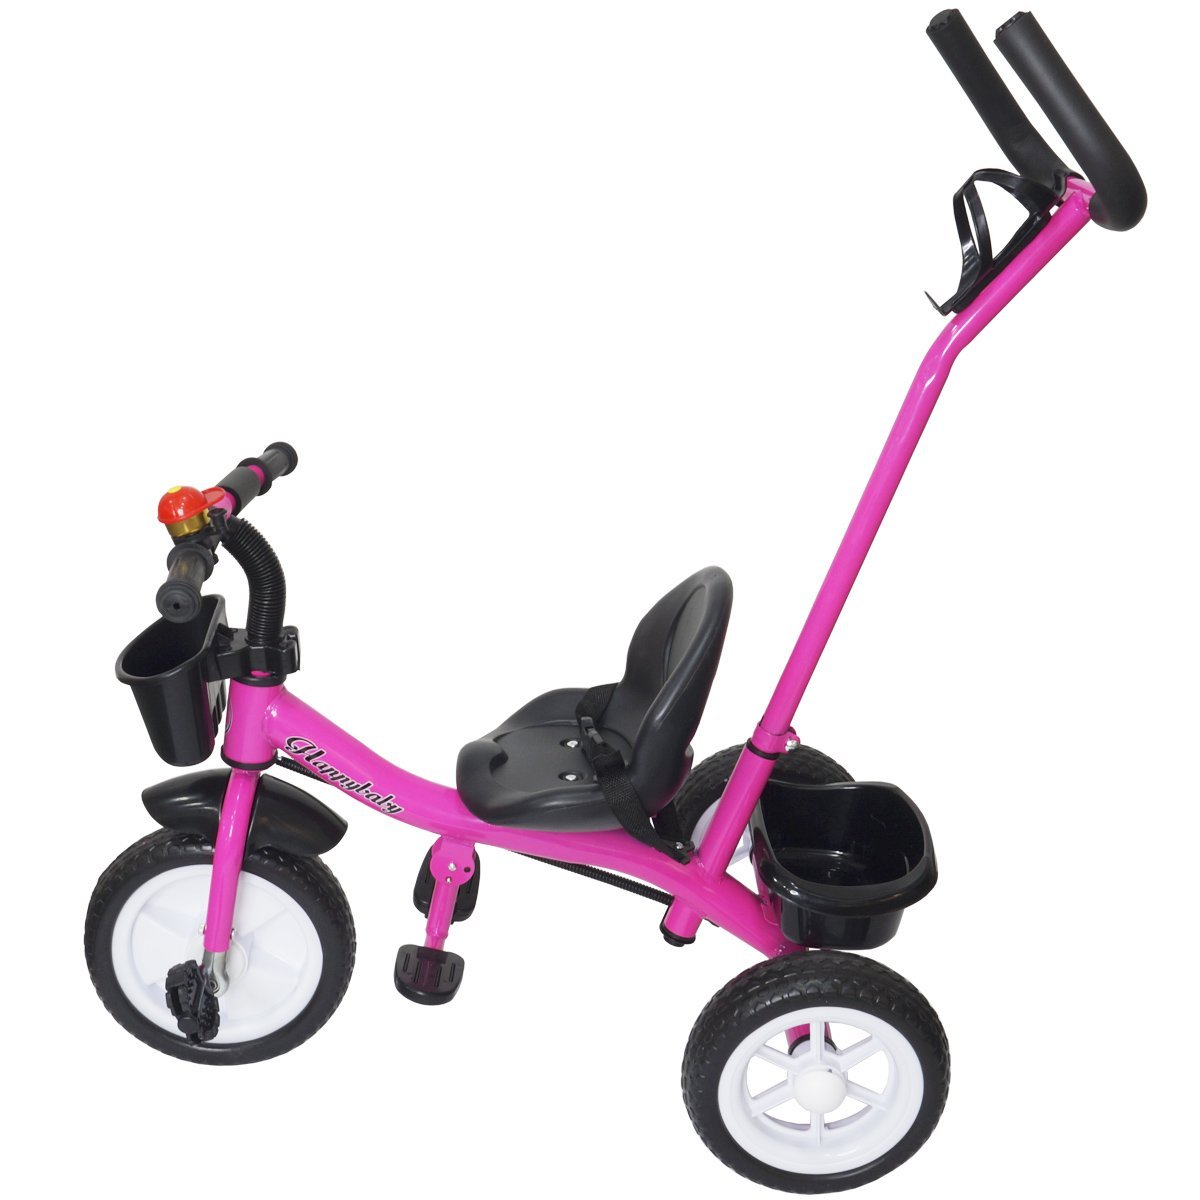 Triciclo Infantil com Haste Empurrador Pedal Motoca Velotrol 2 em 1  Reforçado Brinqway BW-082 - BEST SALE SHOP